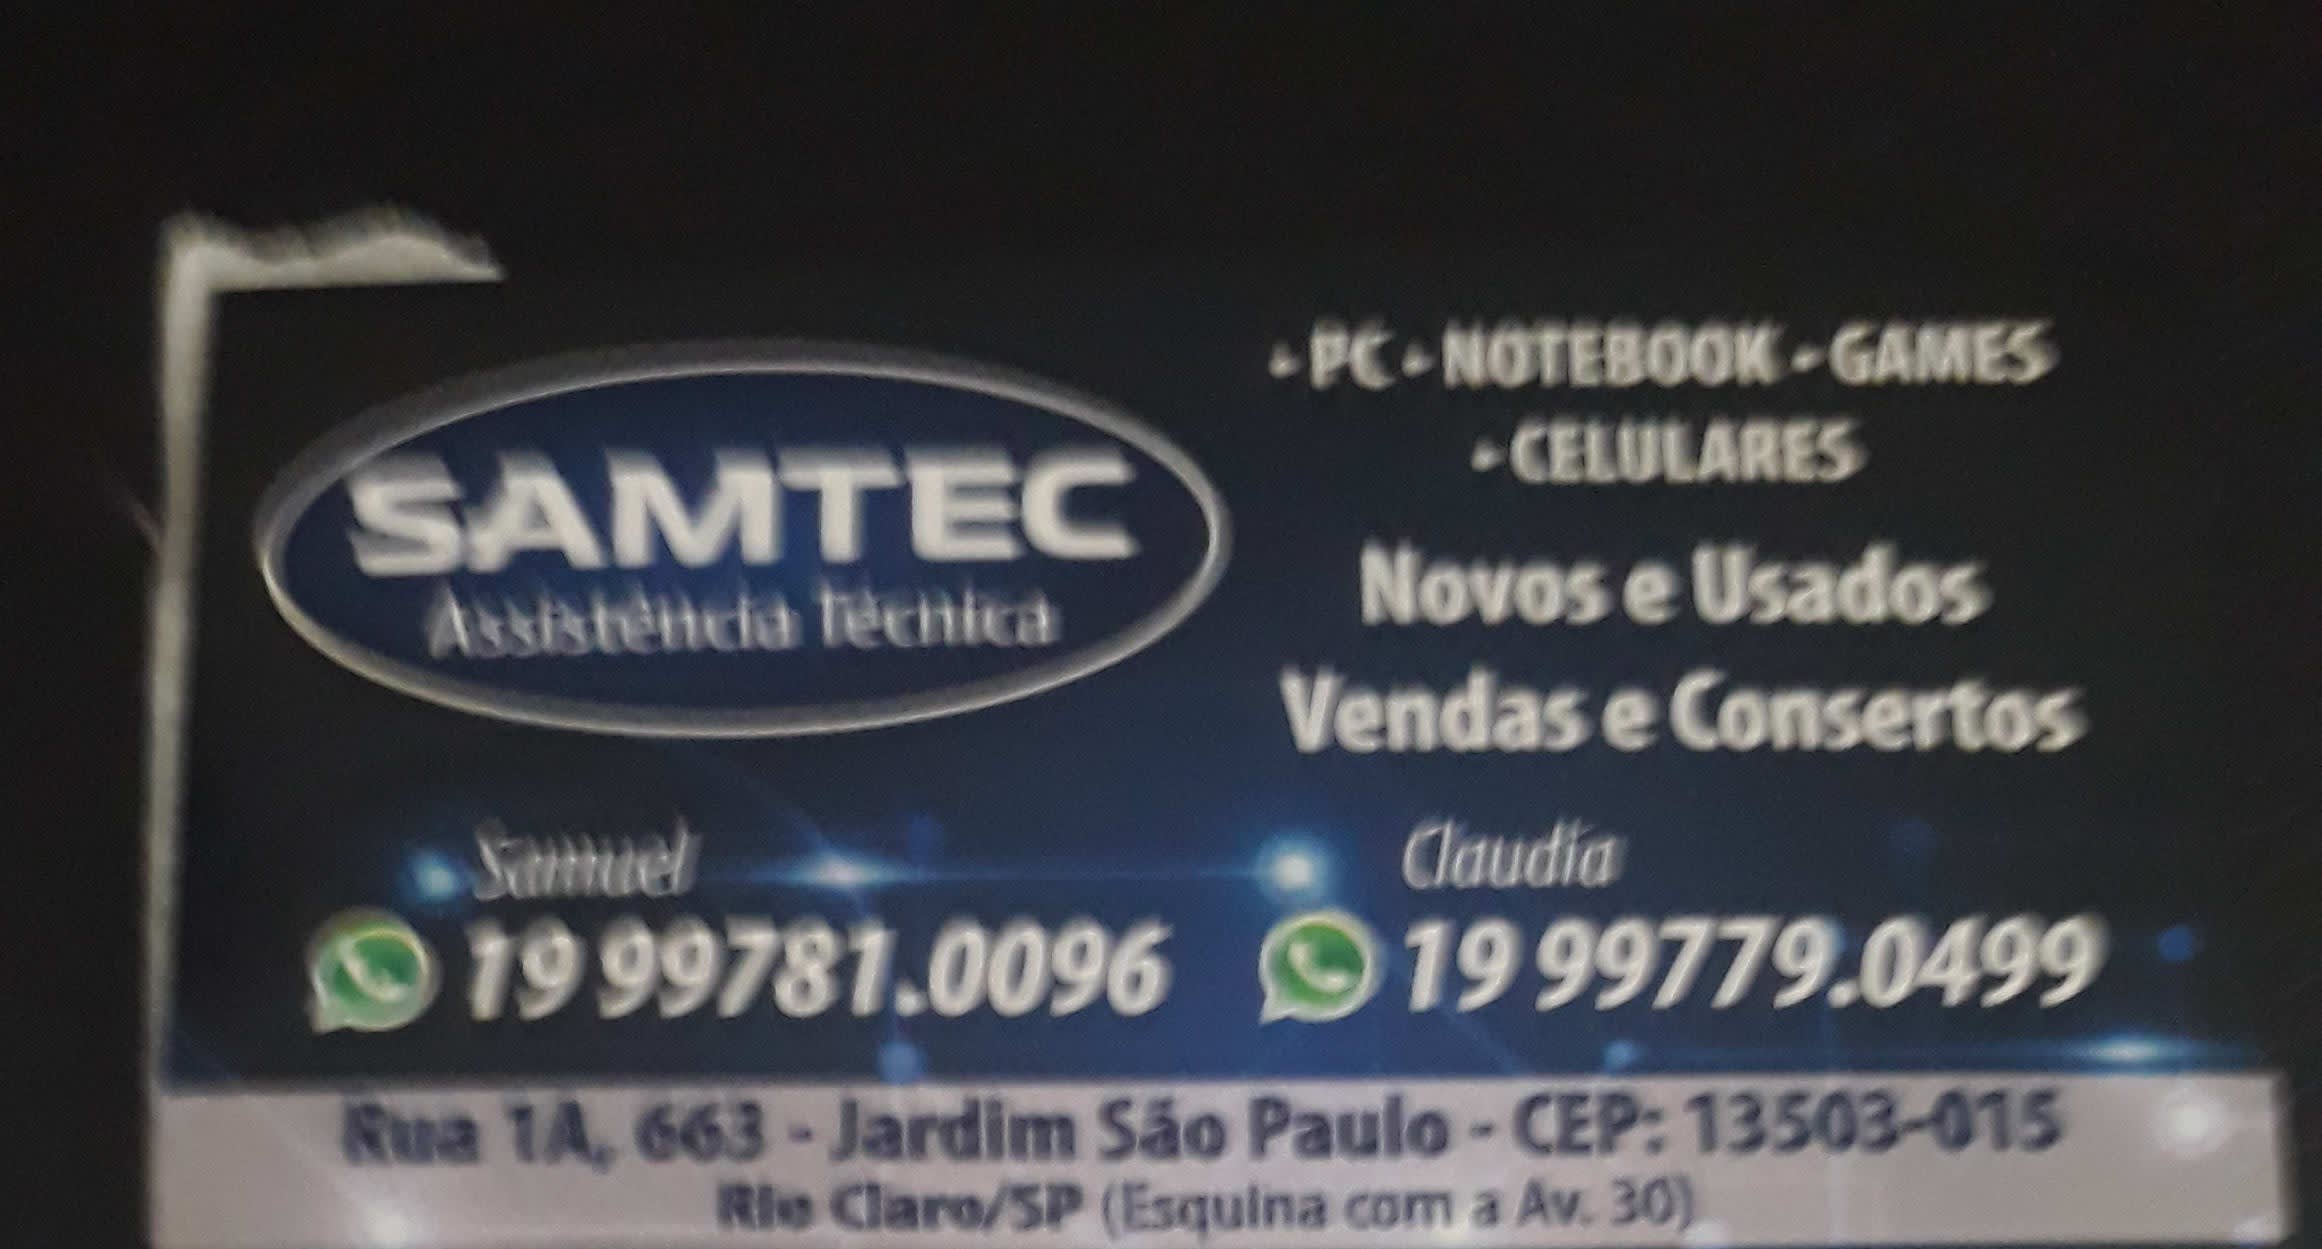 Samtec-Assisténcia Técnica Tv -Informática